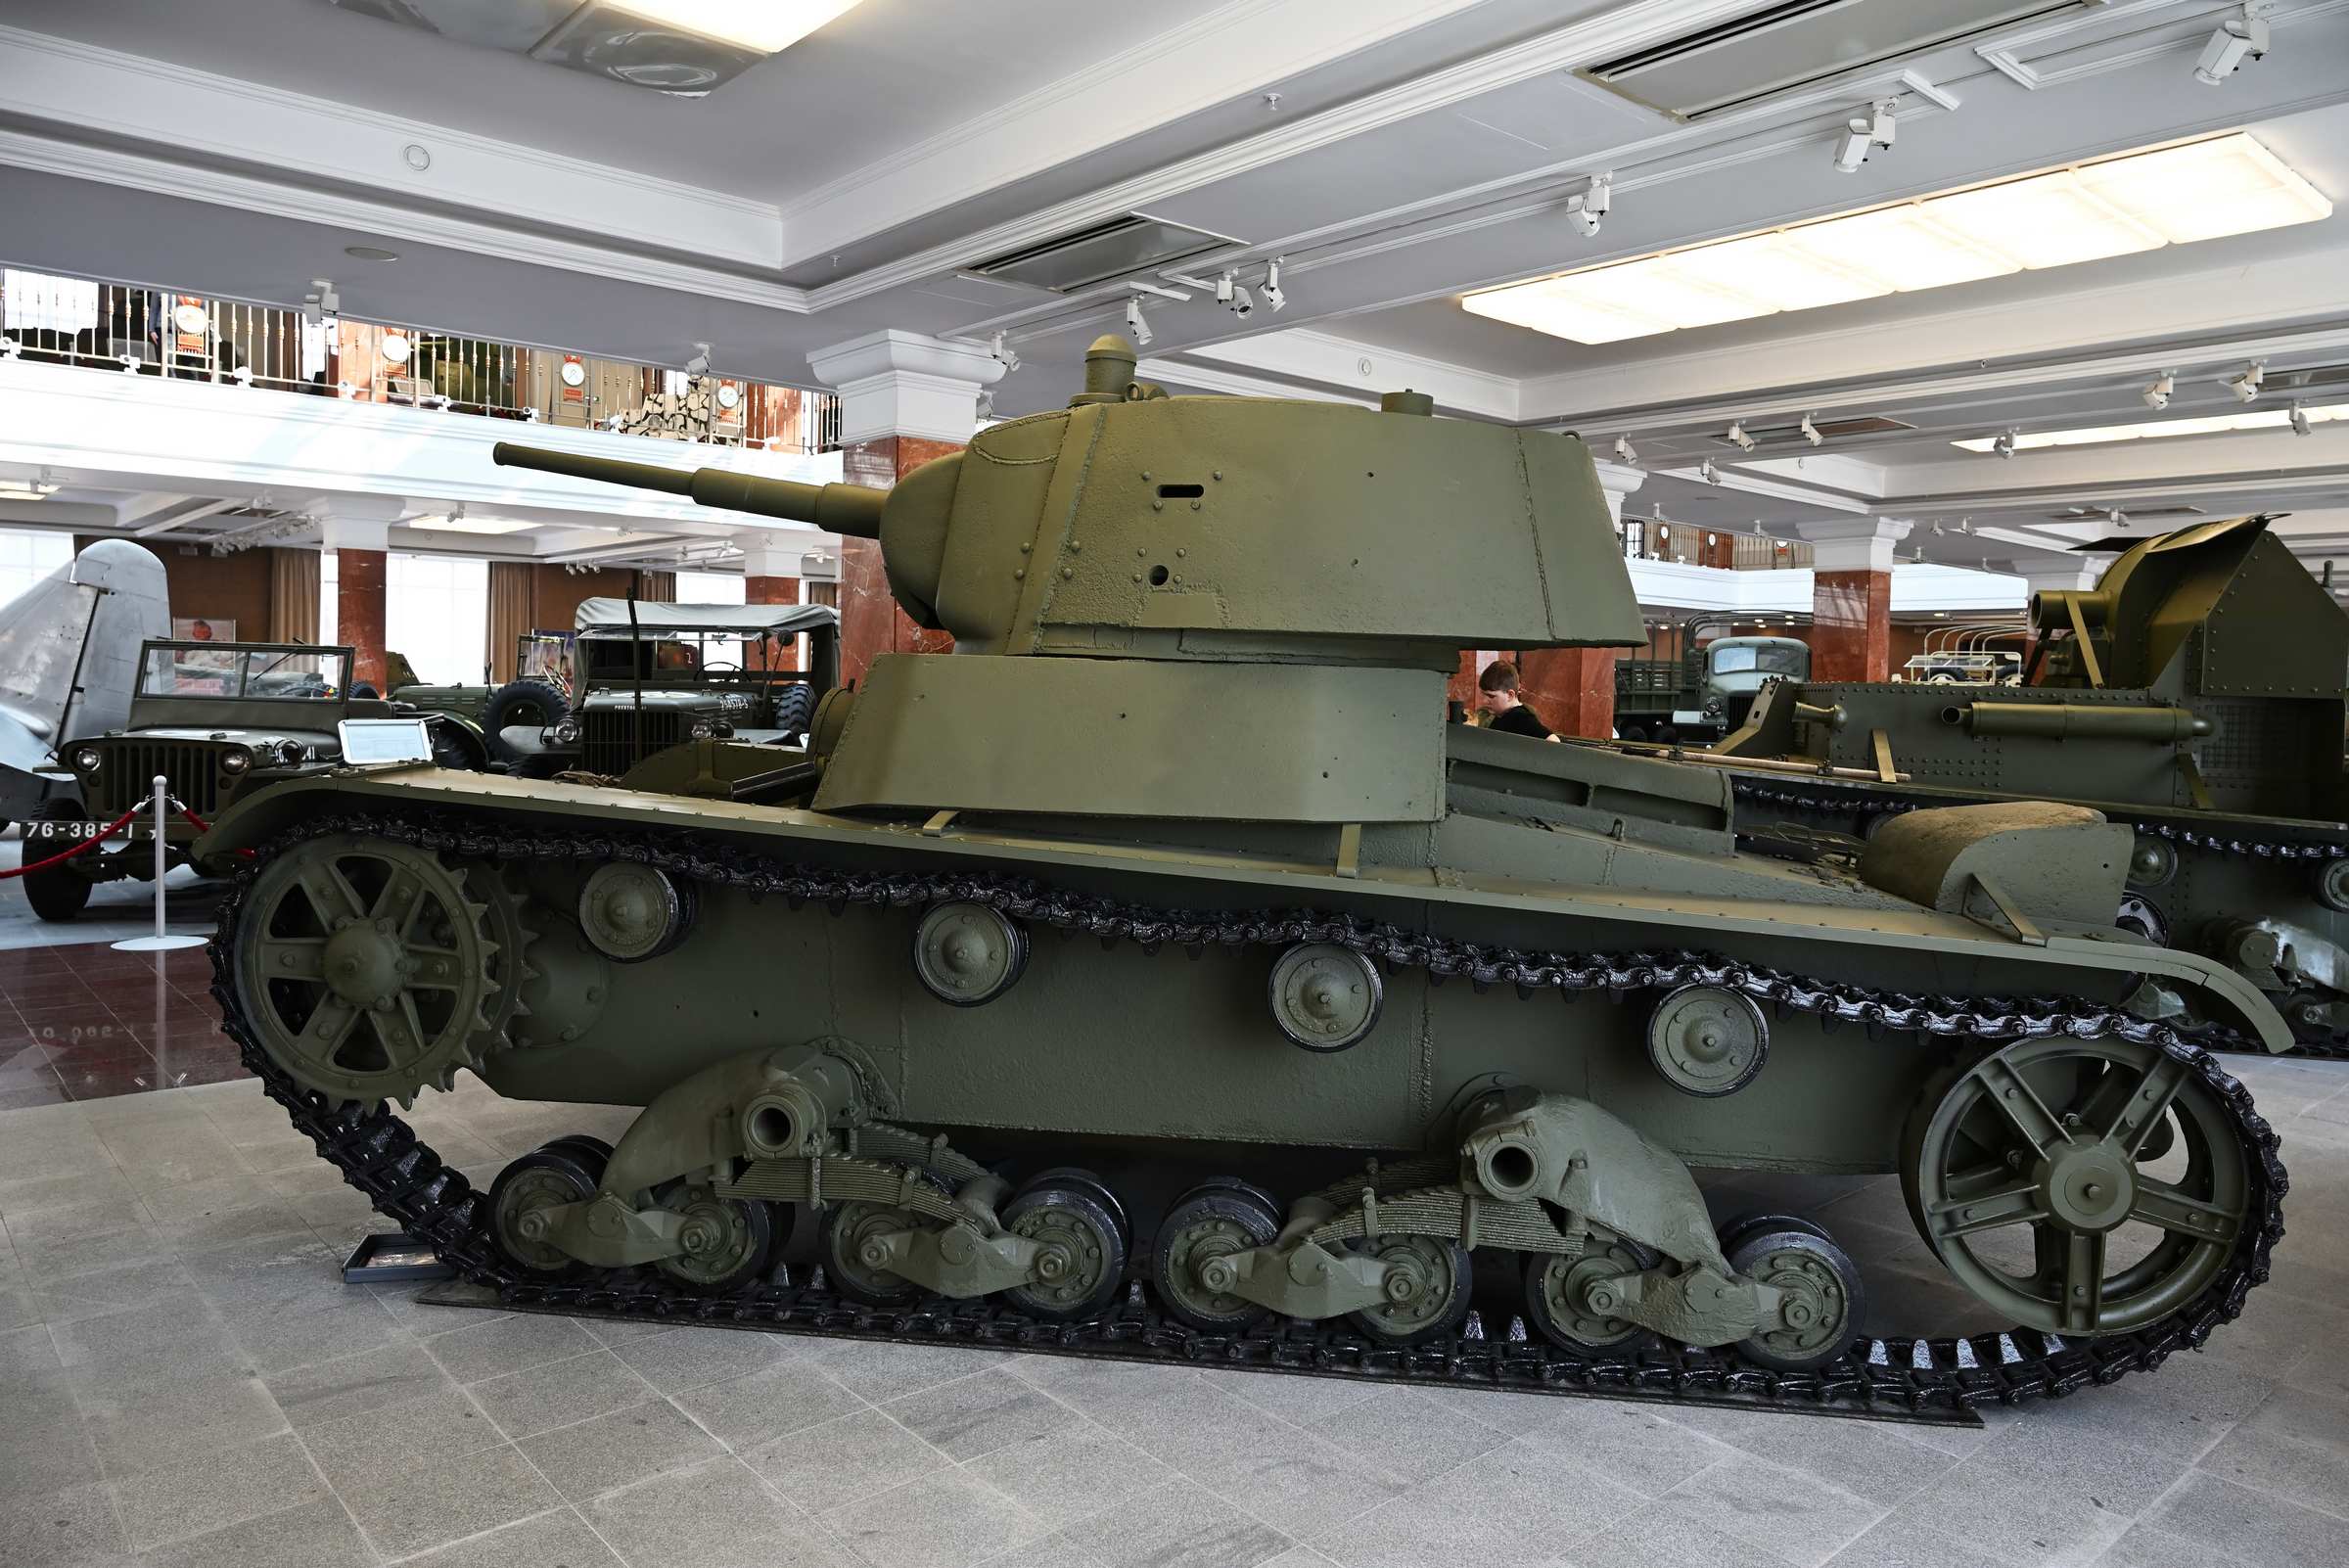 Екатеринбург. Музей военной техники в Верхней Пышме. Легкий танк Т-26 образца 1939 года.